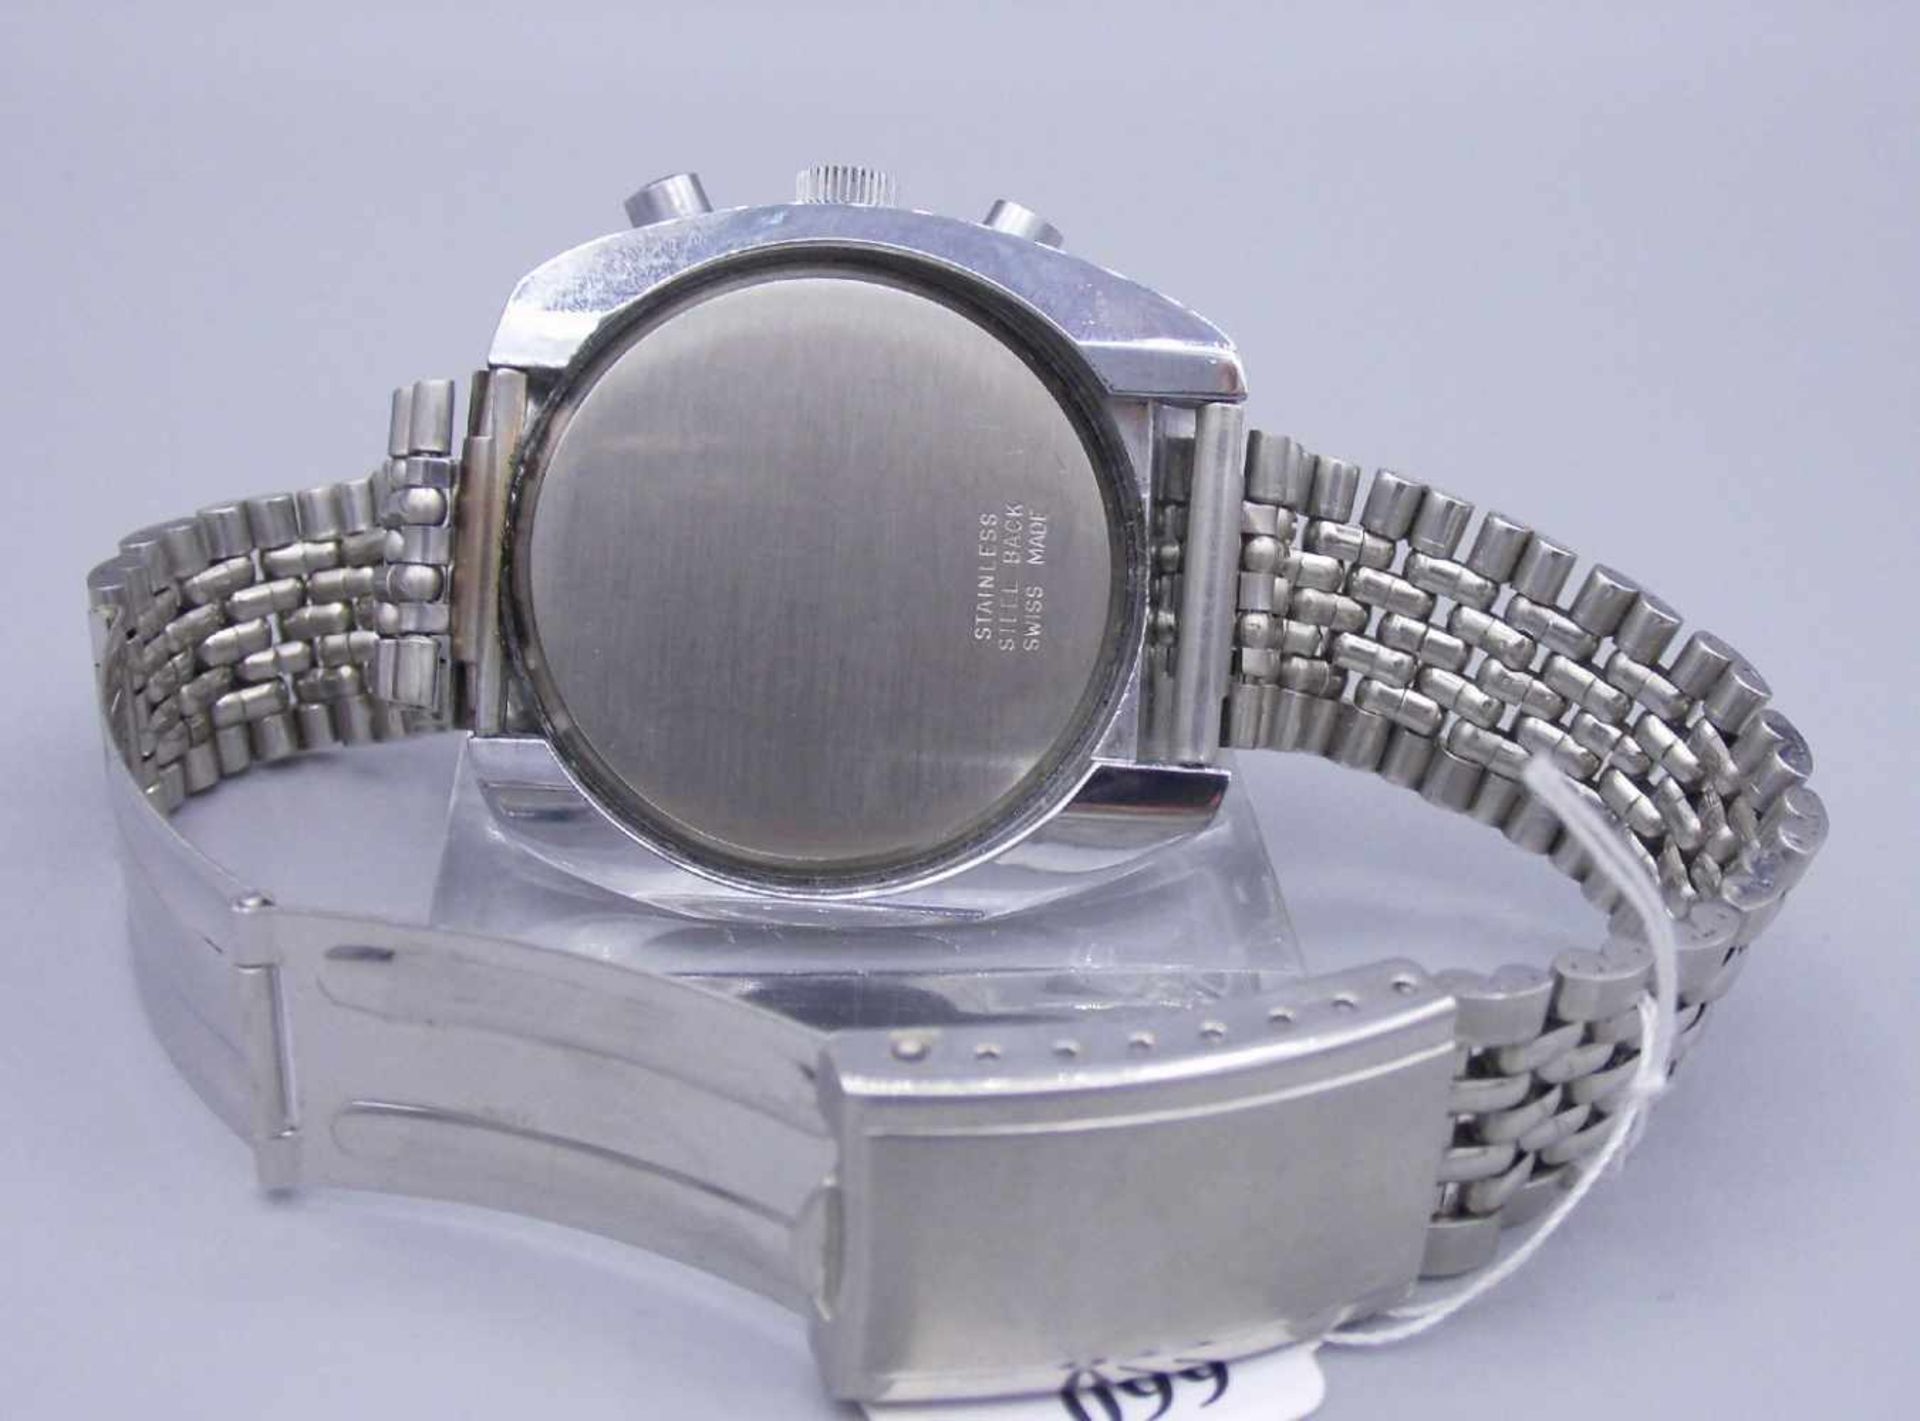 VINTAGE ARMBANDUHR / CHRONOGRAPH - Cimier Chronograph / wristwatch, Handaufzug, Manufaktur Montres - Bild 5 aus 5